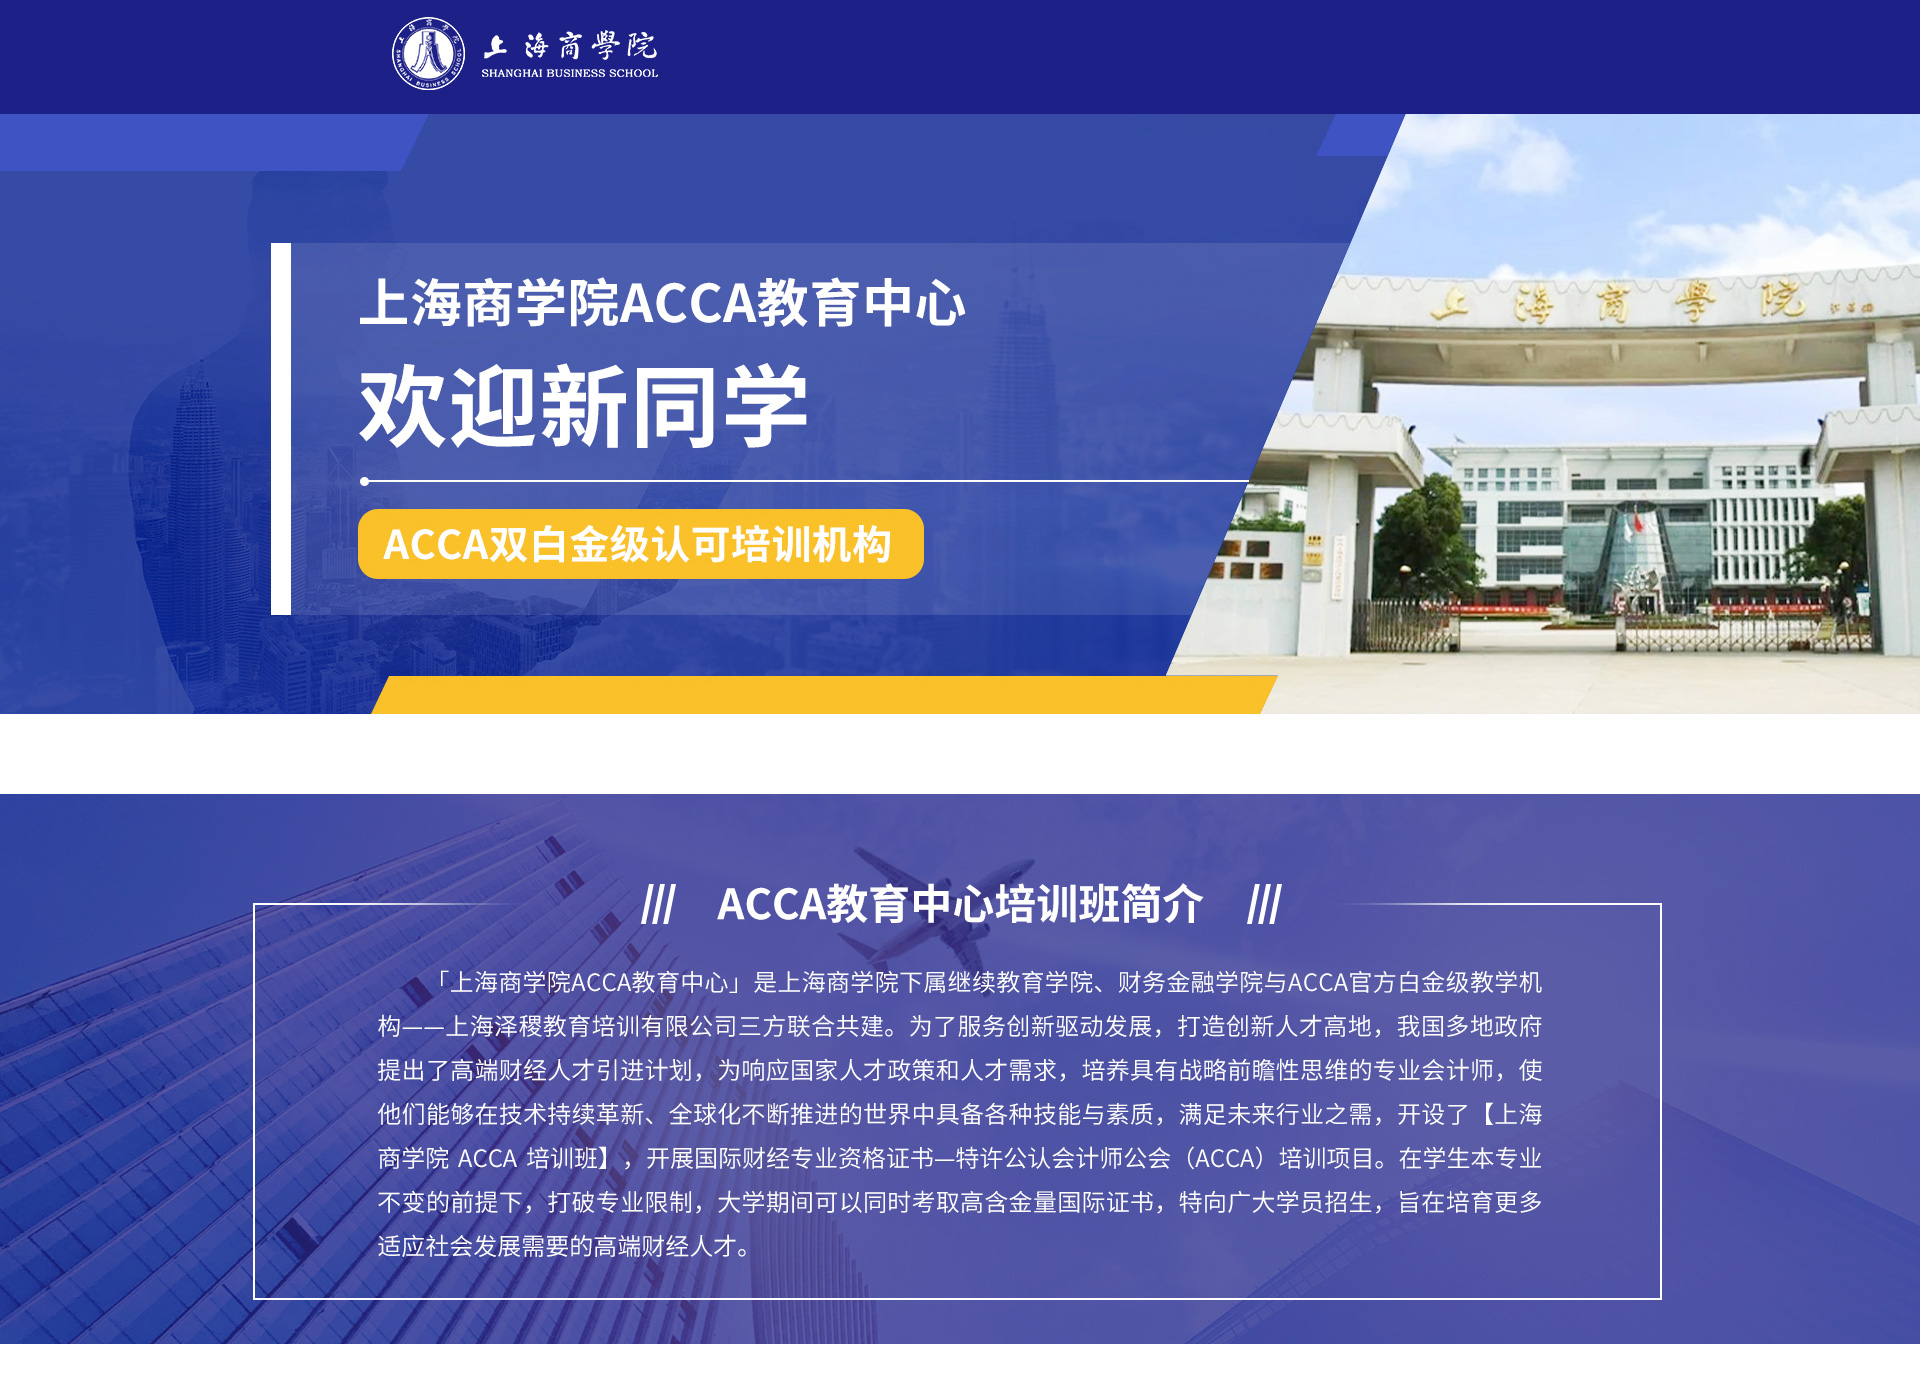 上海商学院ACCA教育中心项目介绍